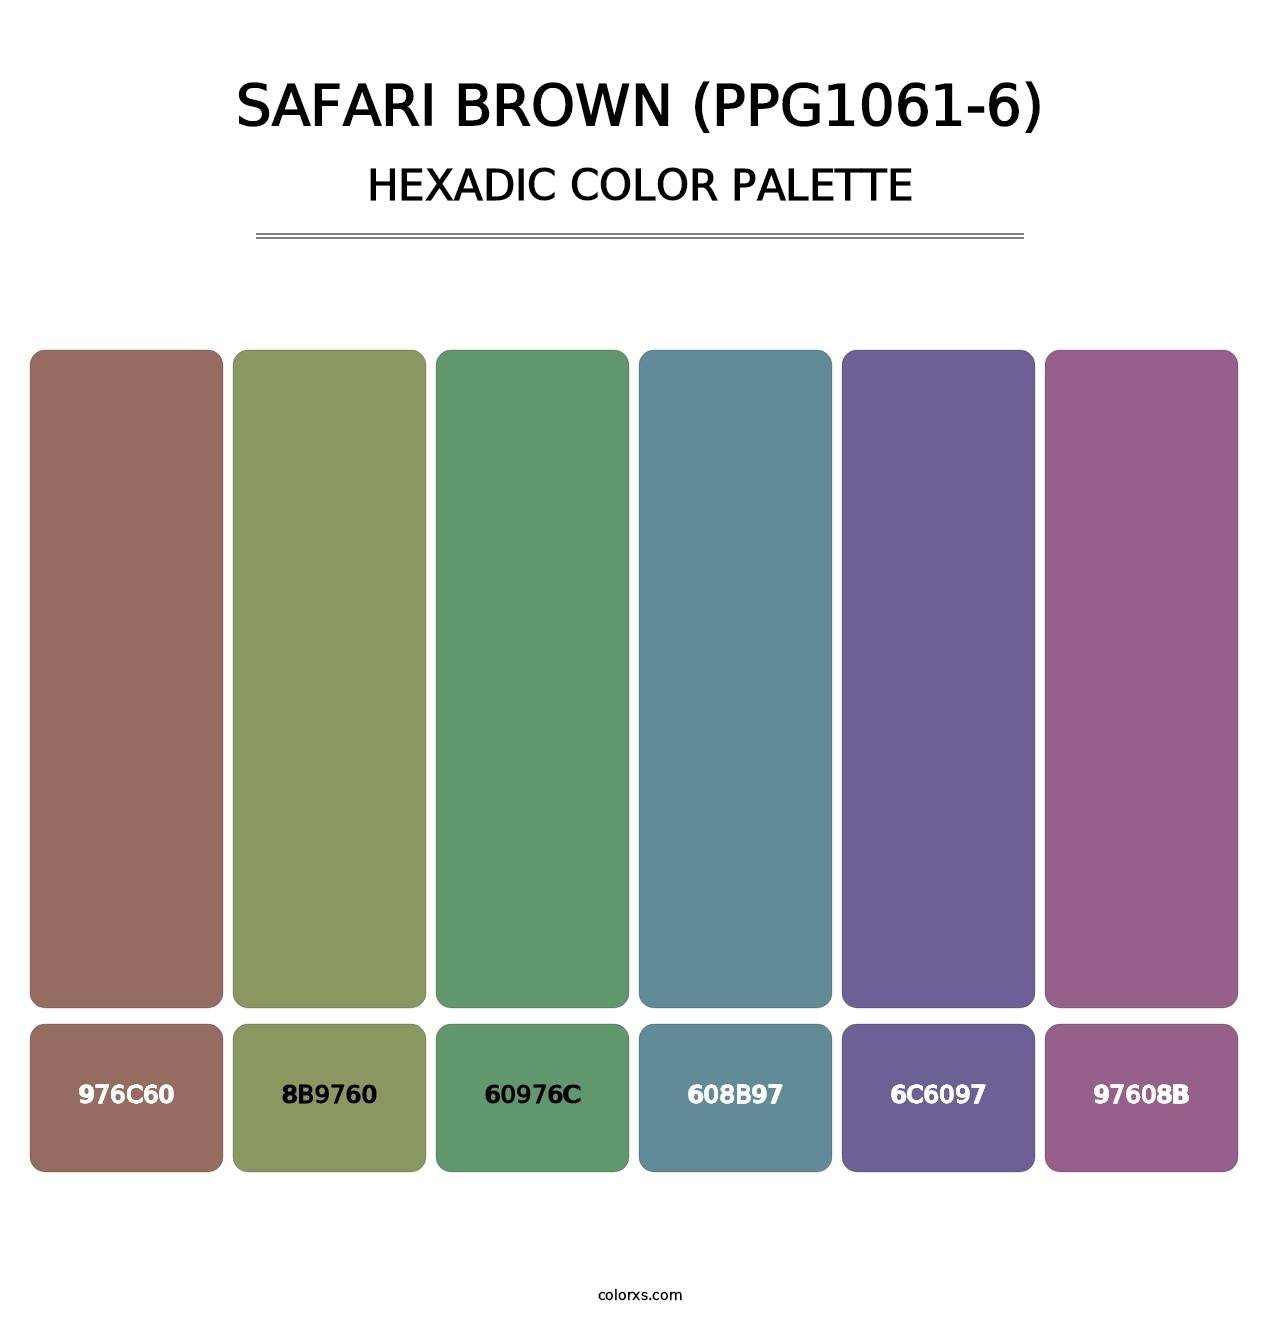 Safari Brown (PPG1061-6) - Hexadic Color Palette